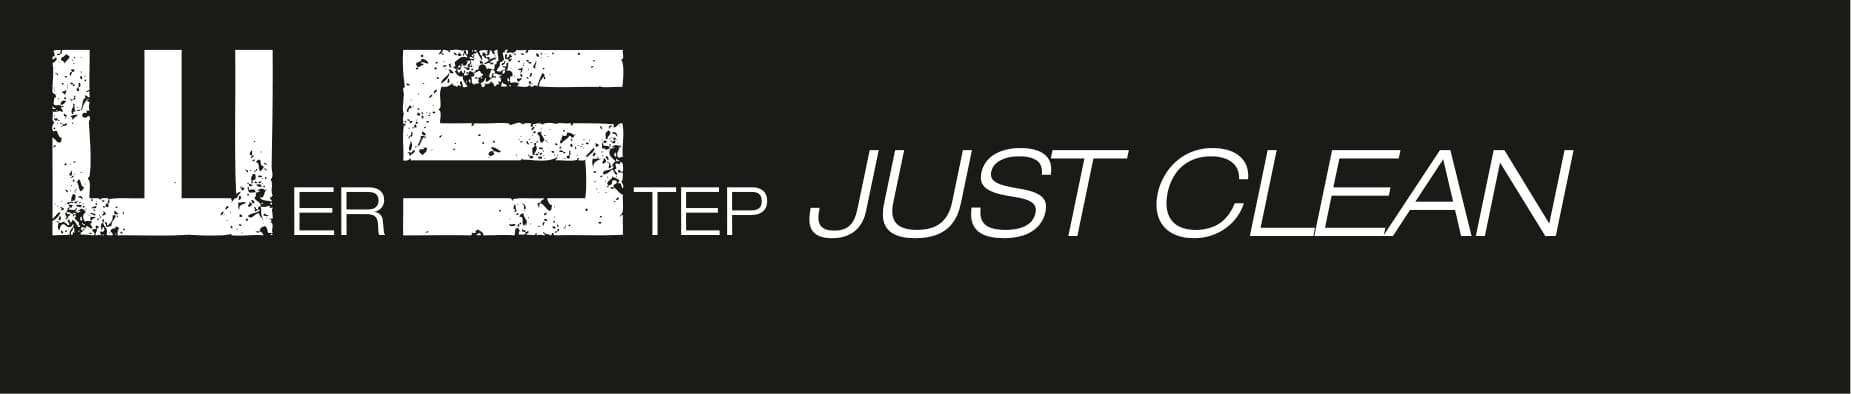 WERSTEP justclean logo